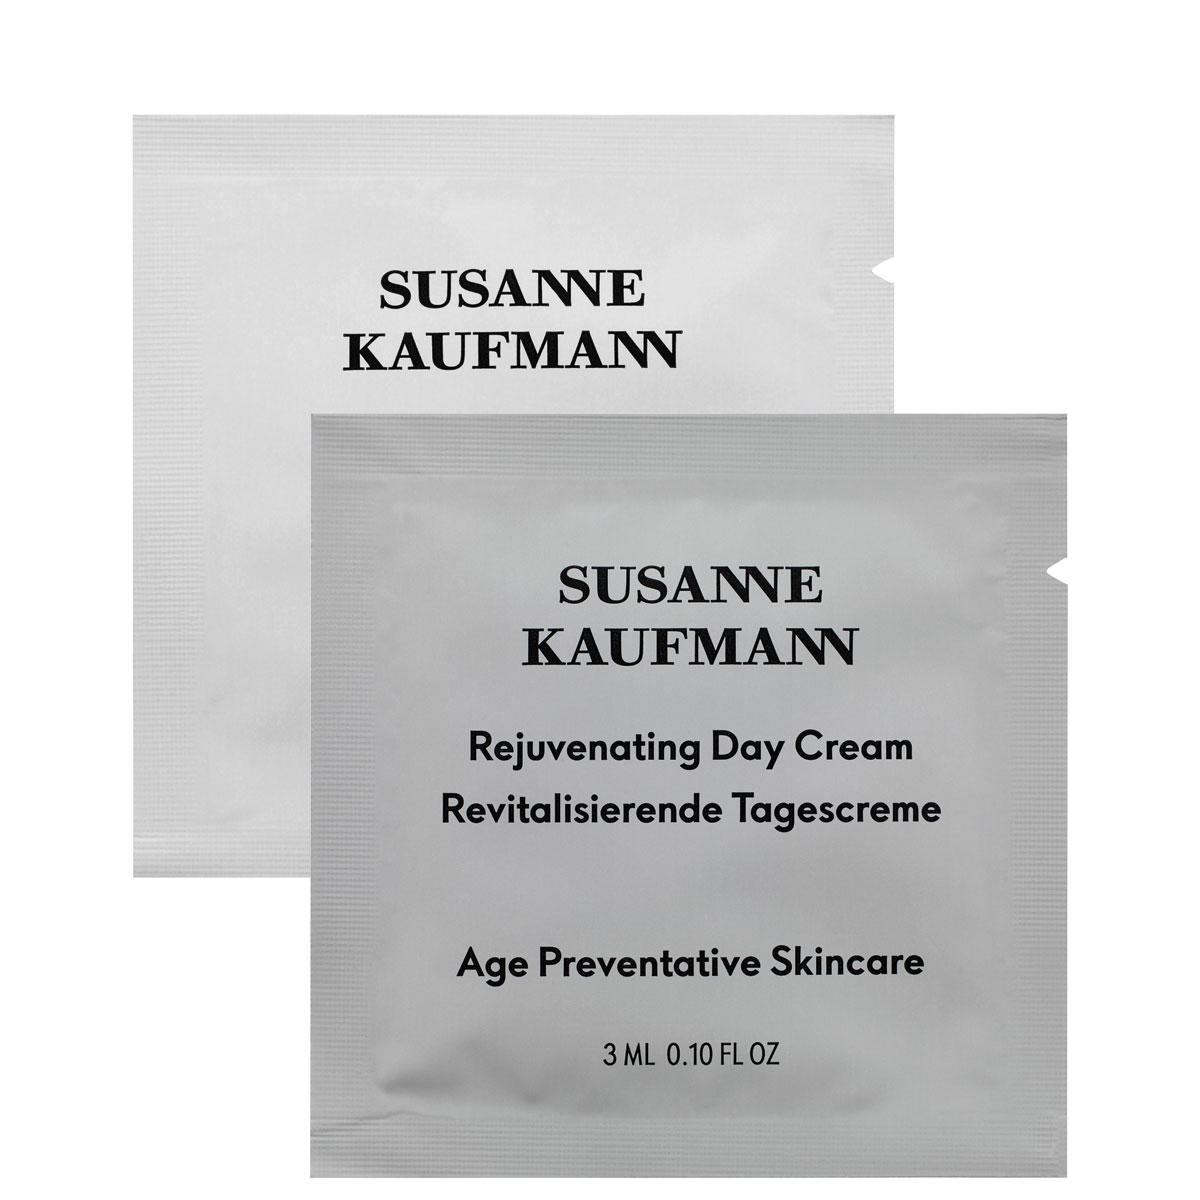 Susanne Kaufmann Crème de jour 3 ml assortie, un échantillon